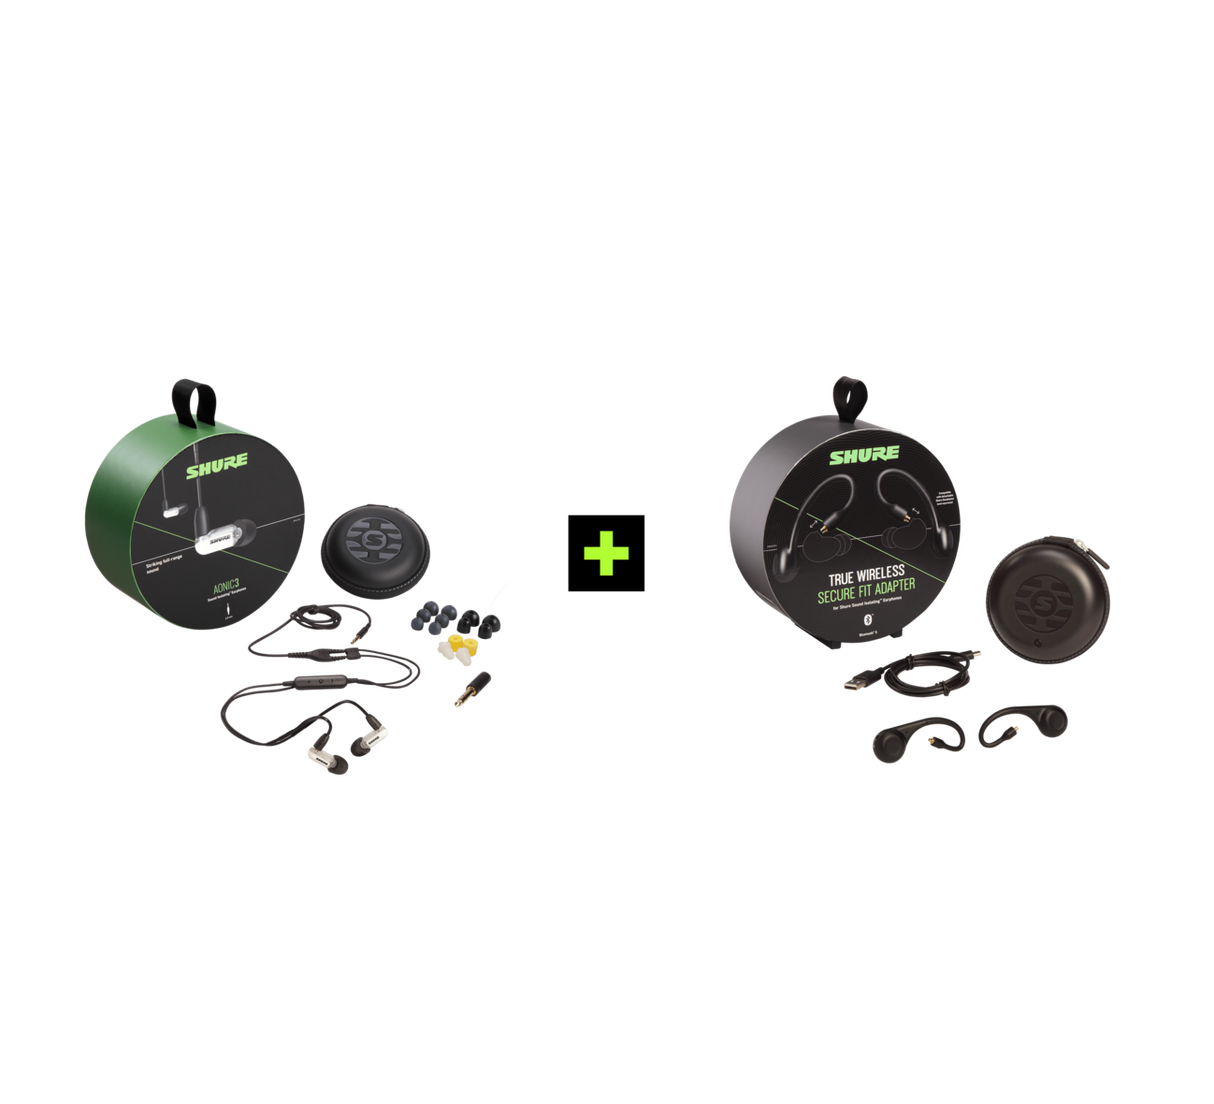  Shure AONIC 3 TRUE WIRELESS EARPHONE BUNDLE,  Ausinių ir belaidžių ausinių adapterio rinkinys (įvairių spalvų) - pakuotės